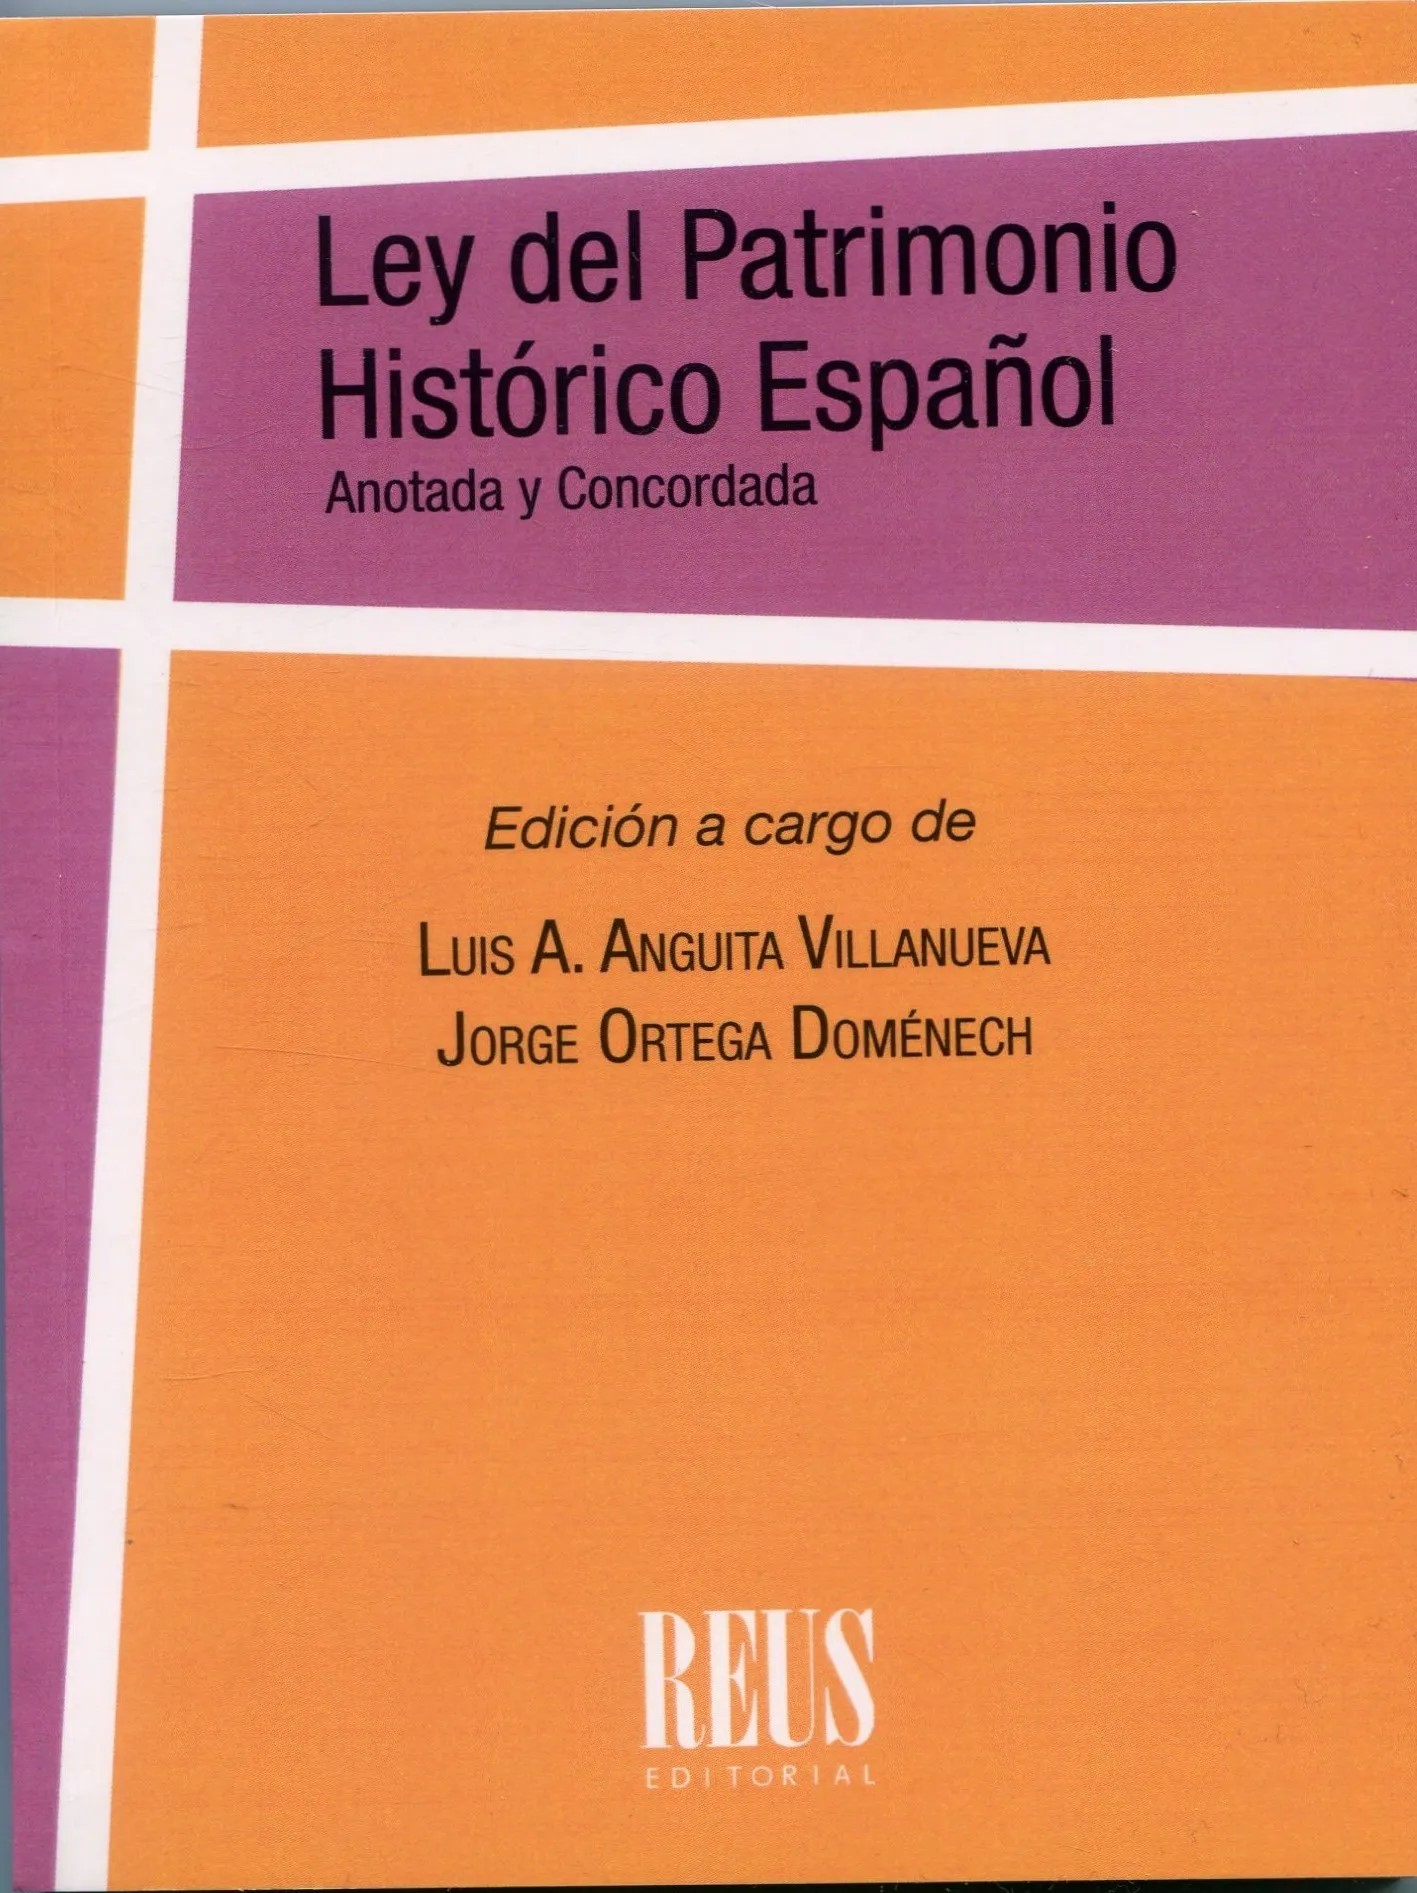 Ley del Patrimonio Histórico Español (Ley 16/1985, de 25 de junio, del Patrimonio Histórico Español) 